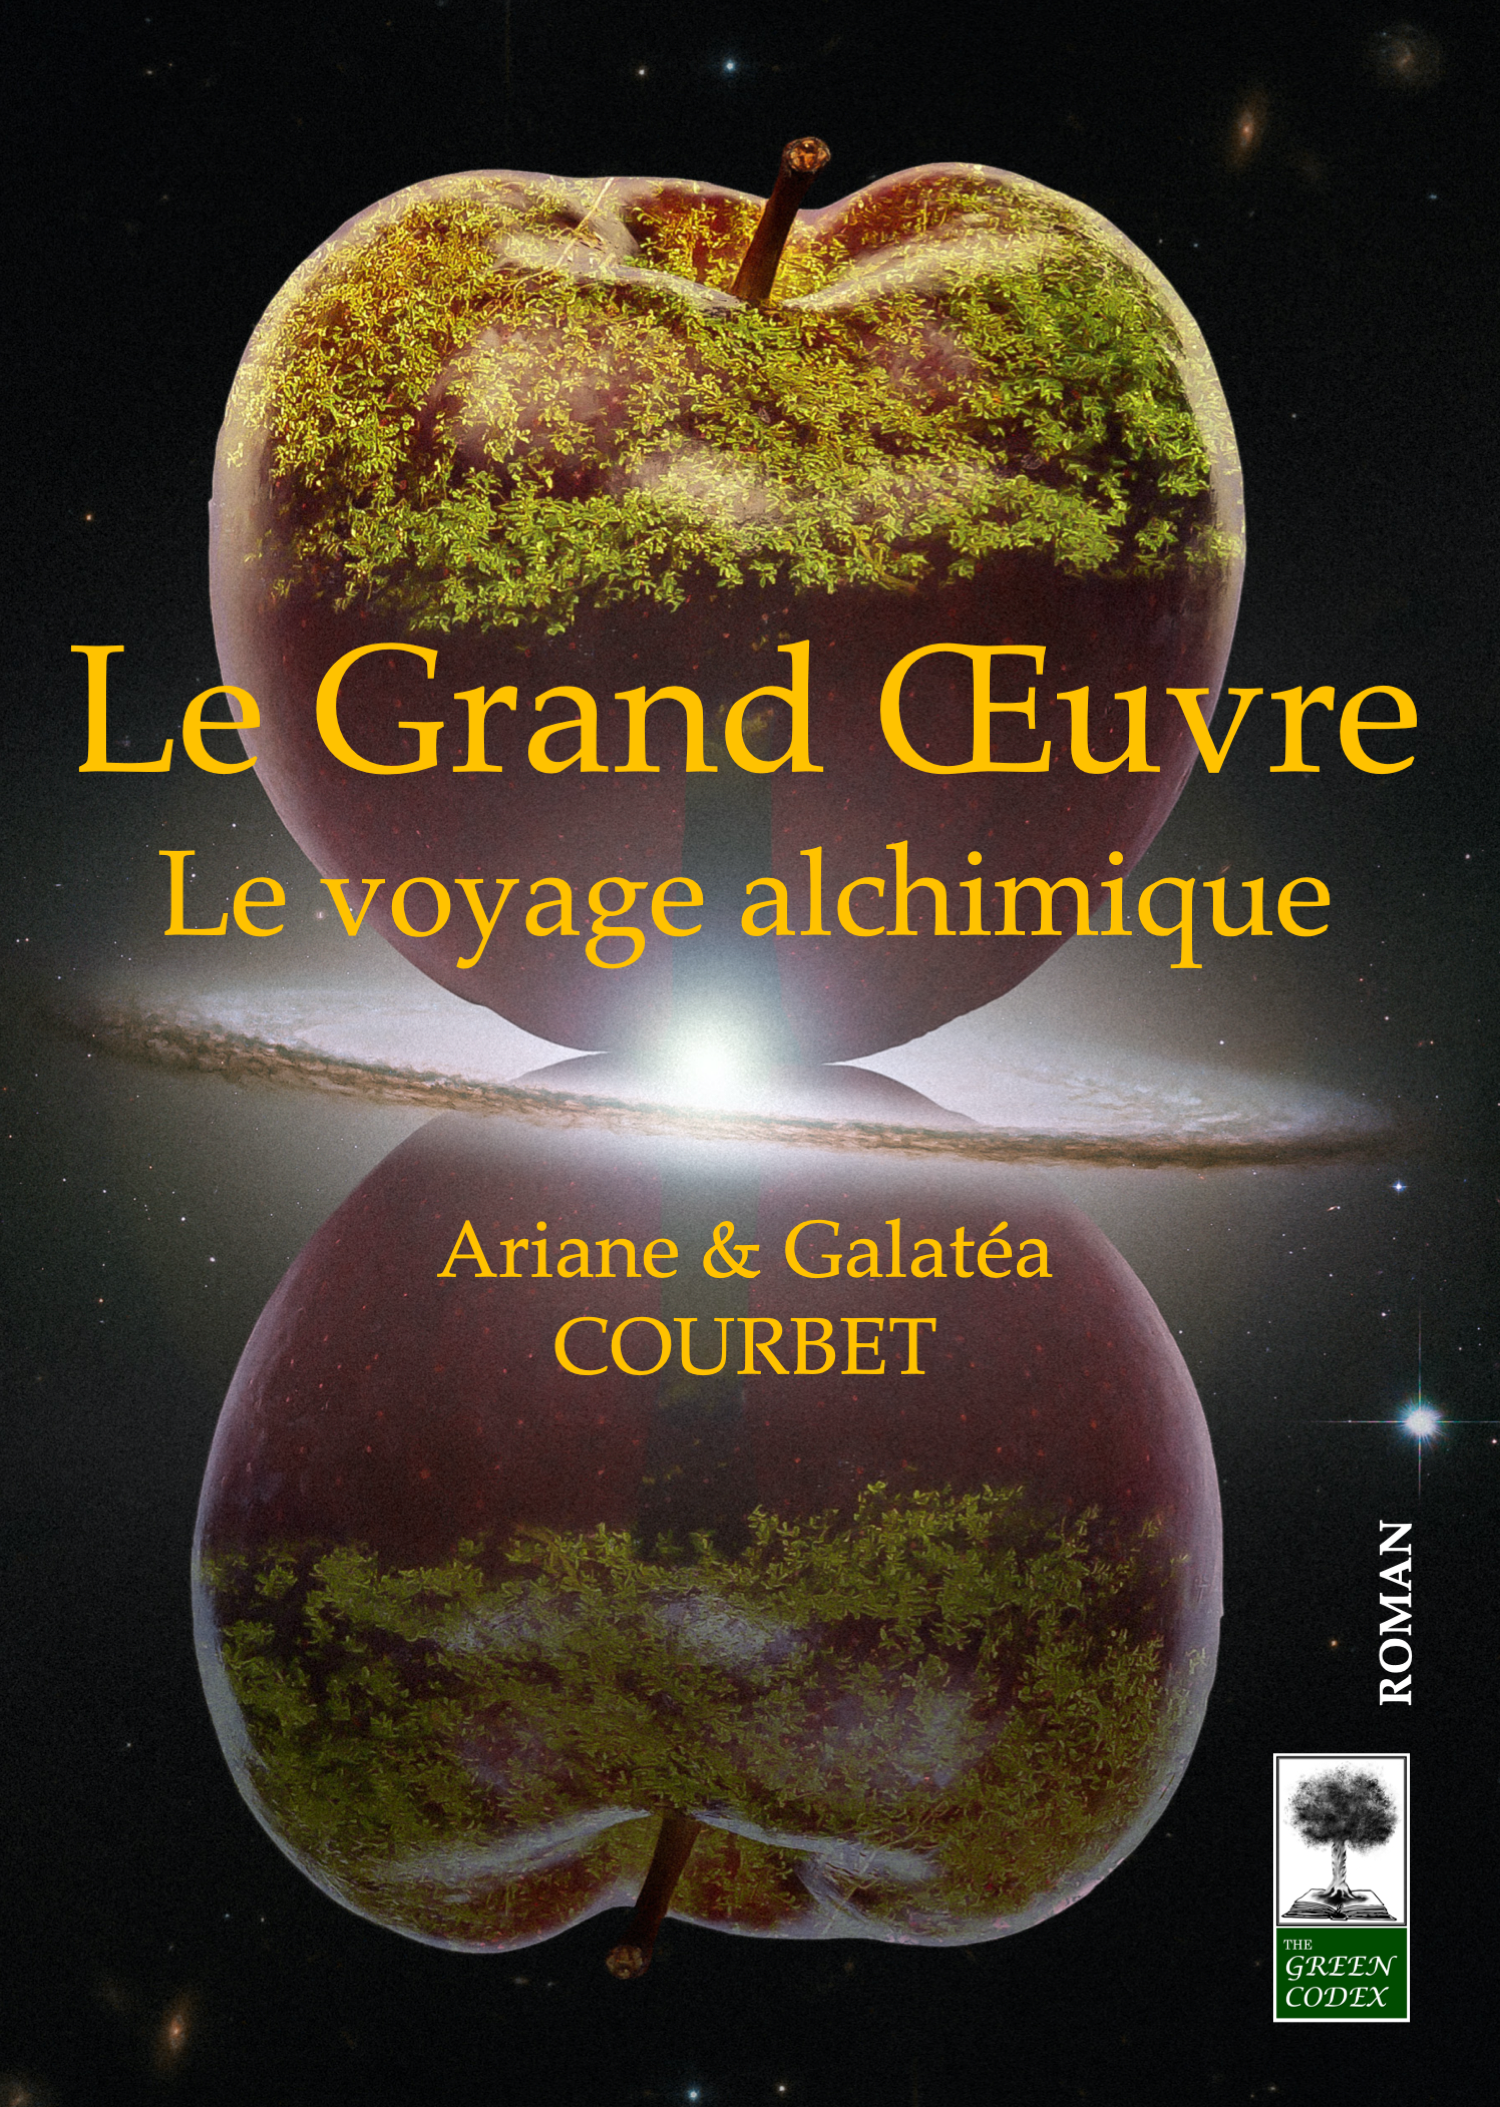 Le Grand Oeuvre - Le voyage alchimique est un livre de fantasy et spiritualité écrit par Ariane et Galatéa Courbet, édité par The Green Codex